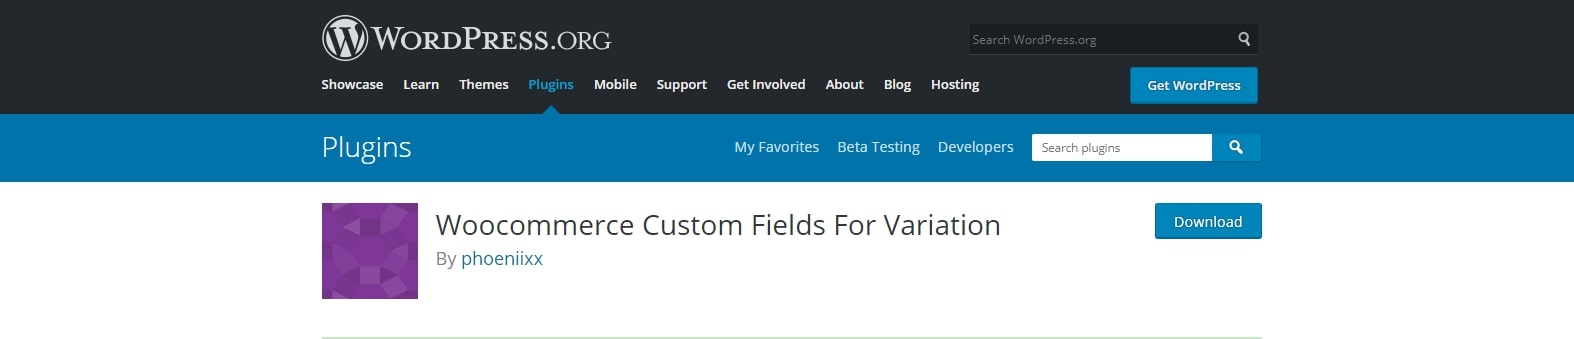 WooCommerce Custom Fields For Variation